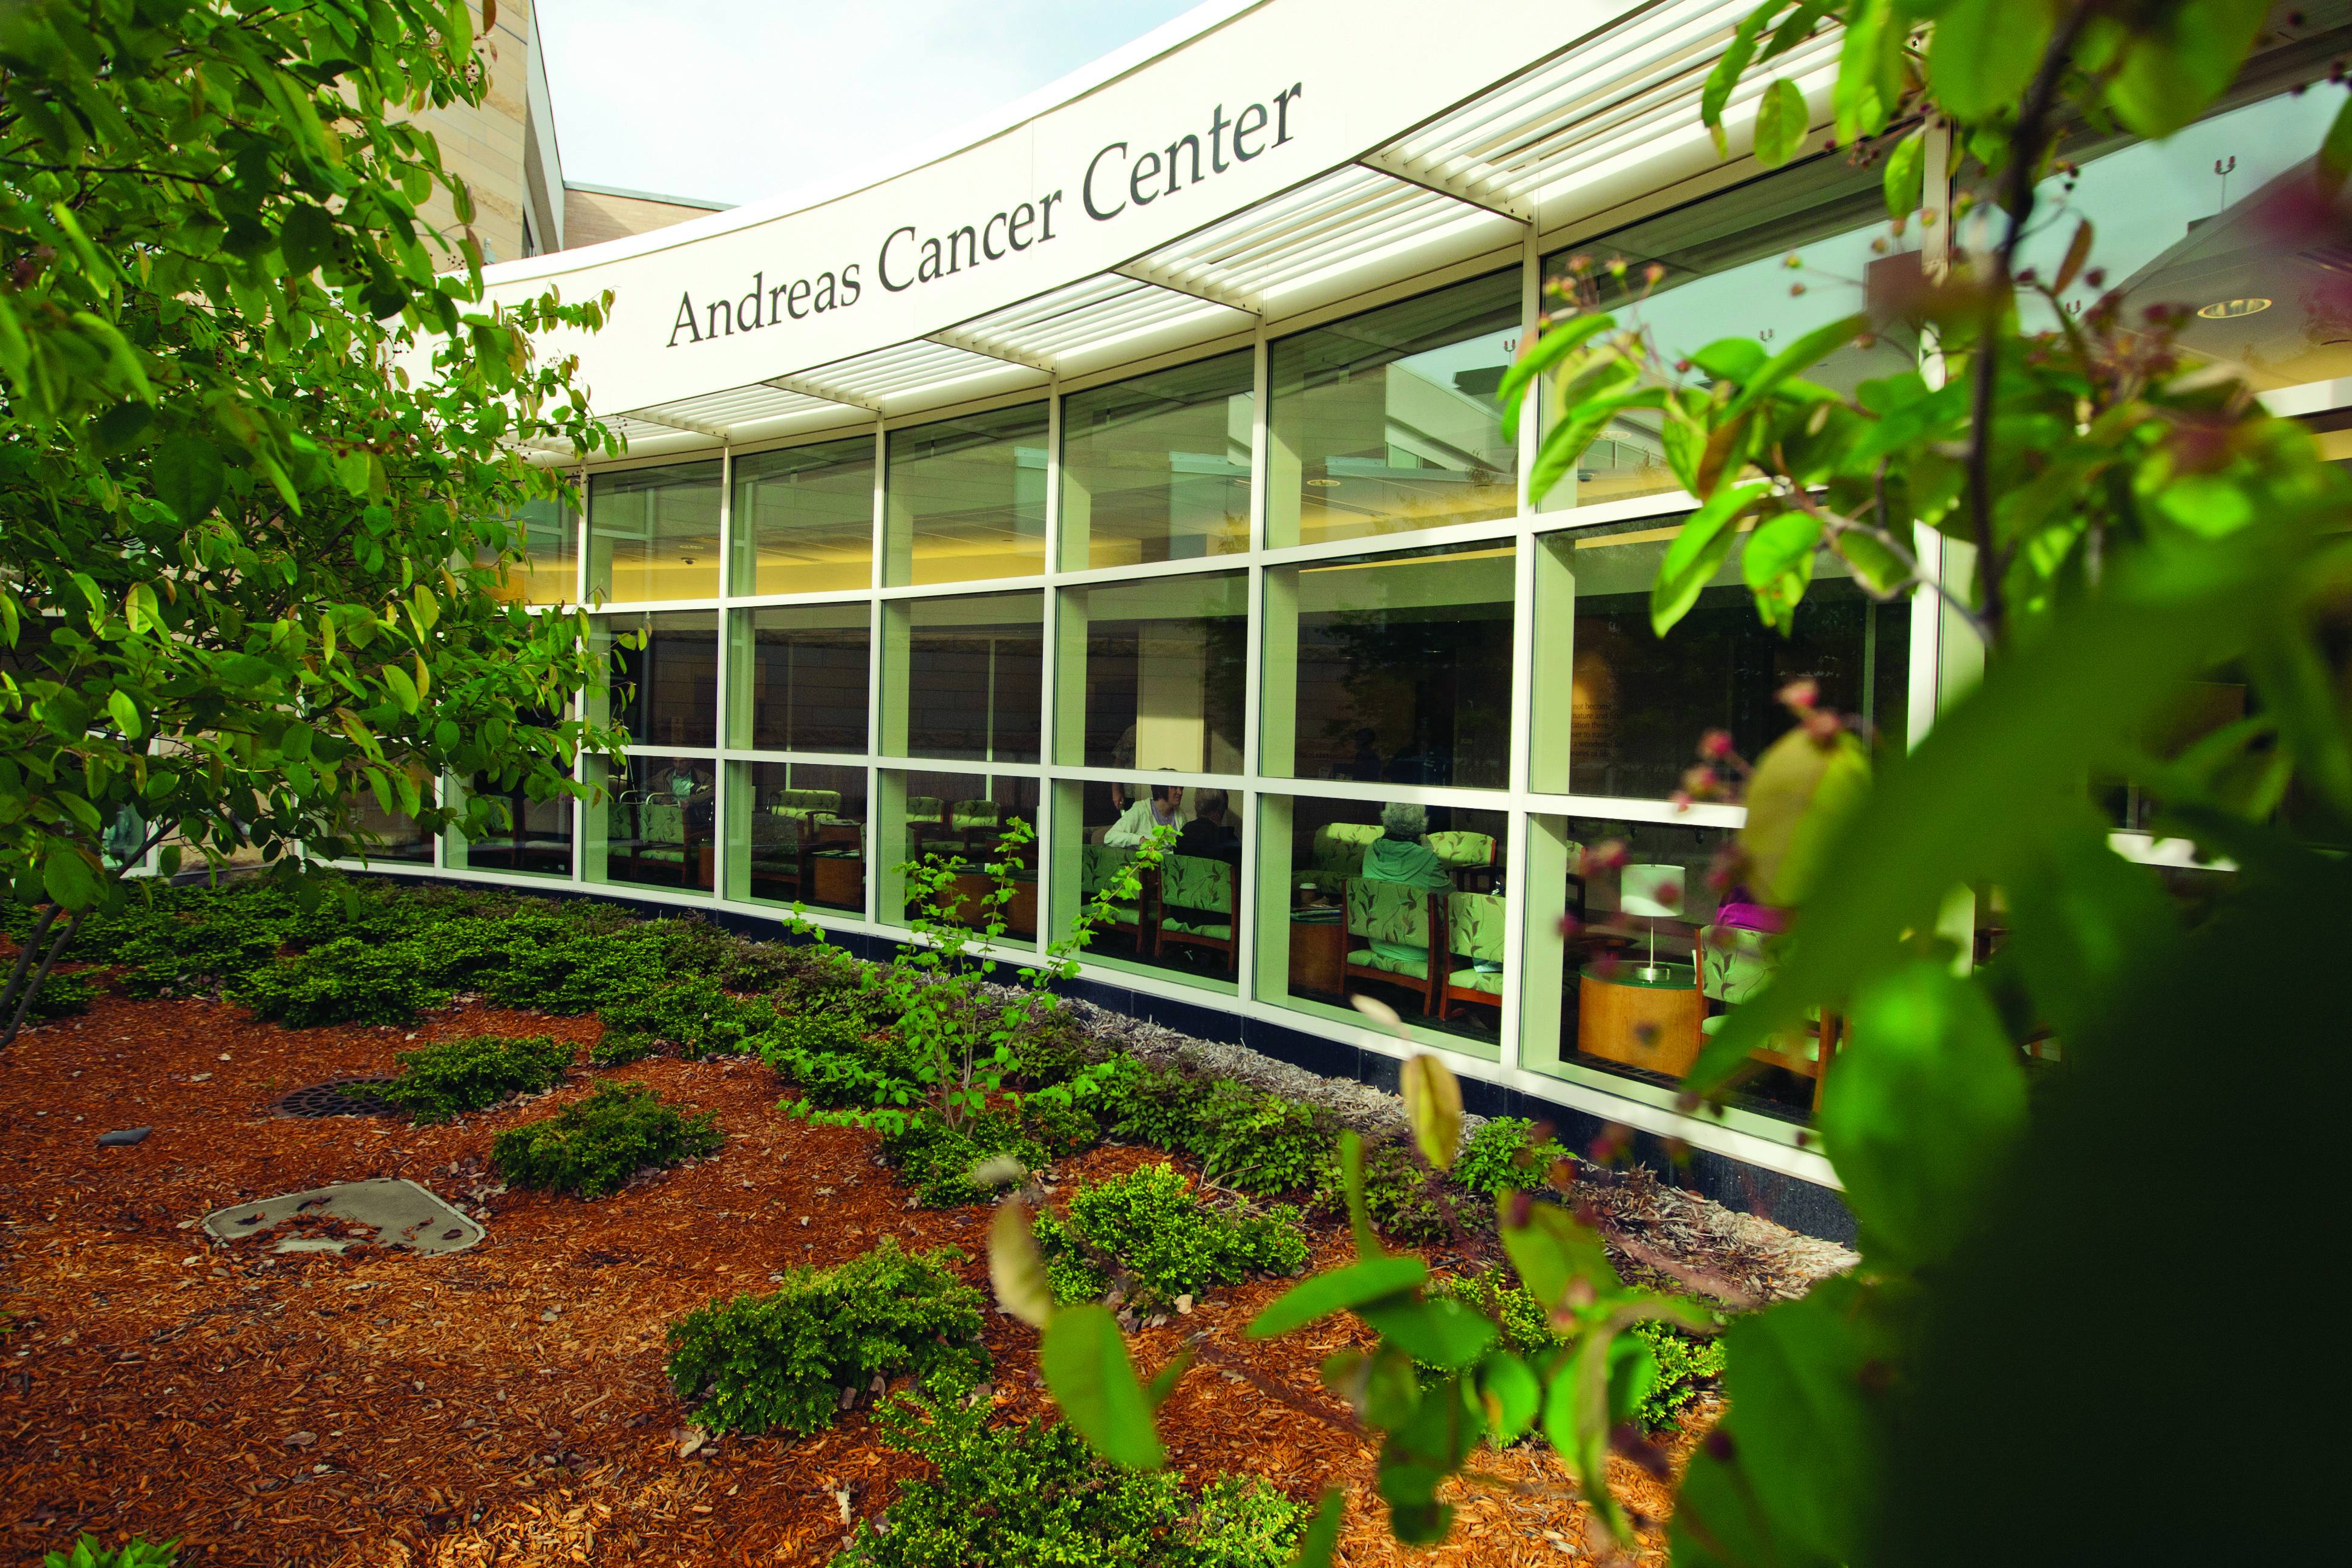 Andreas Cancer Center in Mankato, Minn.